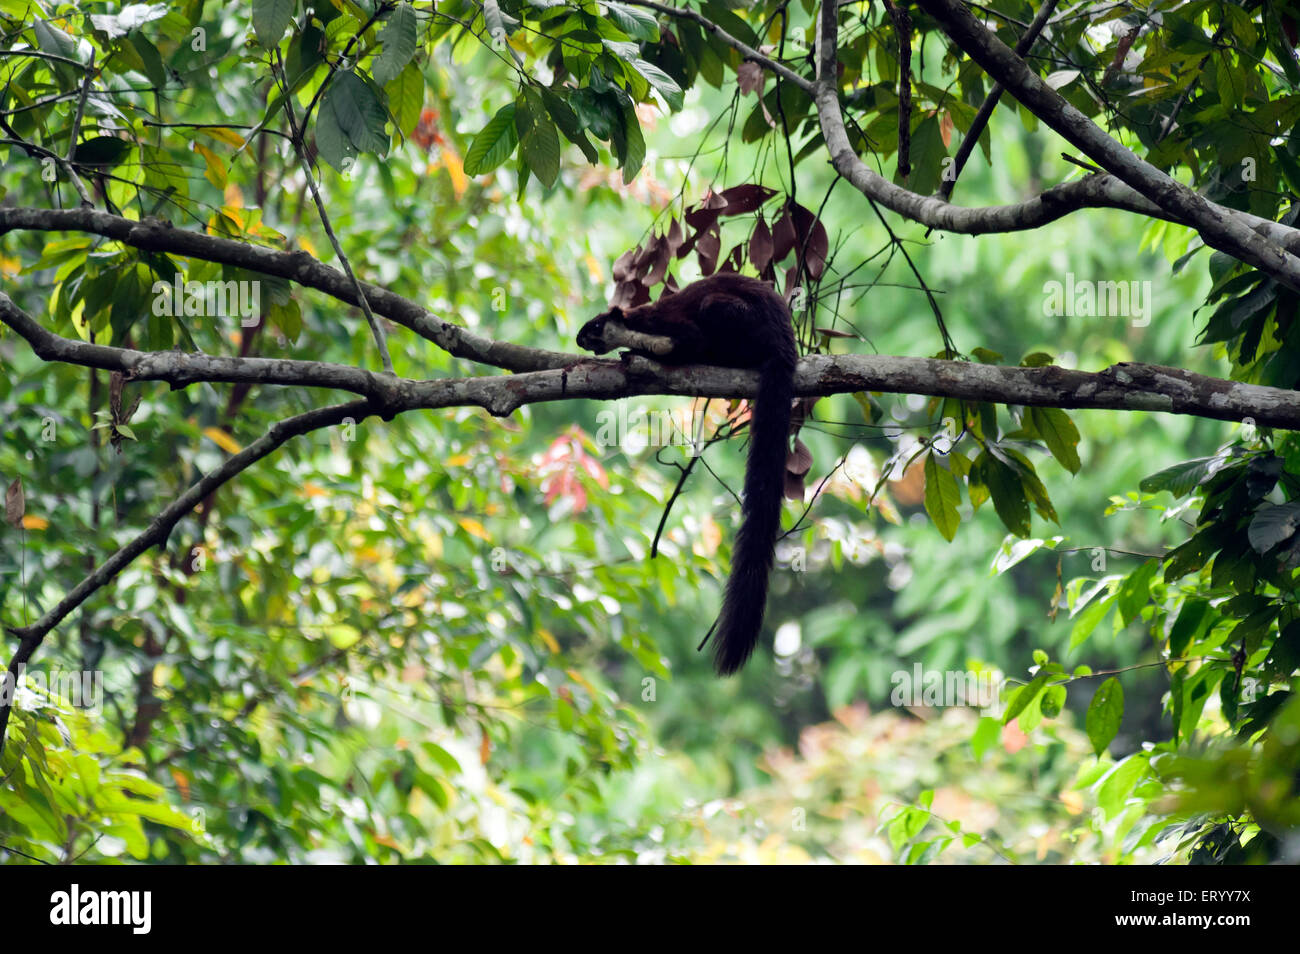 Malaiische riesiges Eichhörnchen auf Baum in Jorhat in Assam Indien Asien Stockfoto